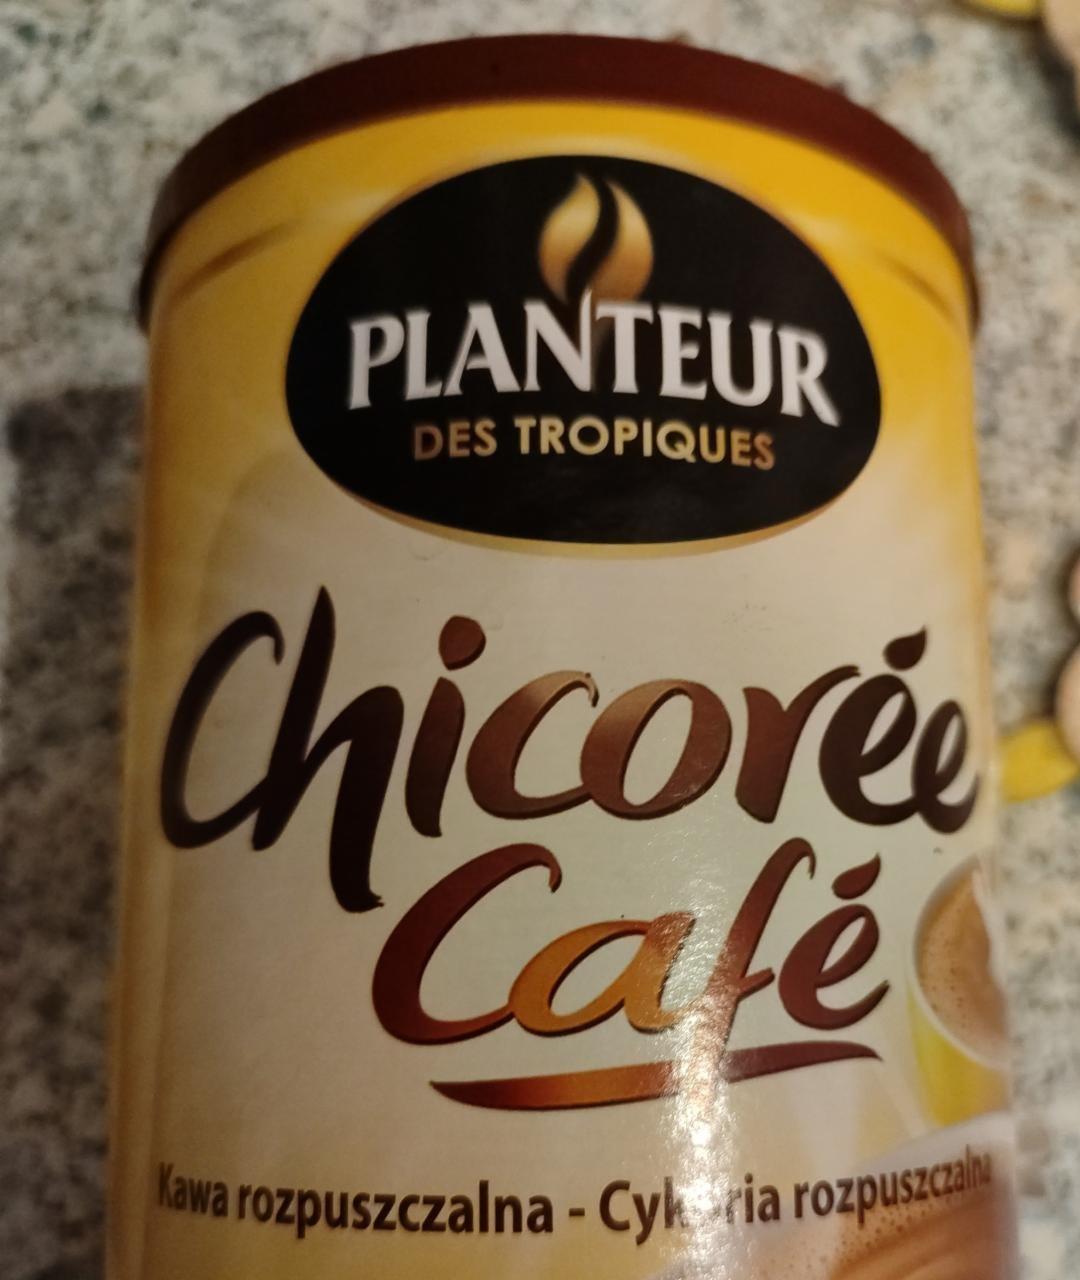 Фото - Chicorée café Planteur des tropiques